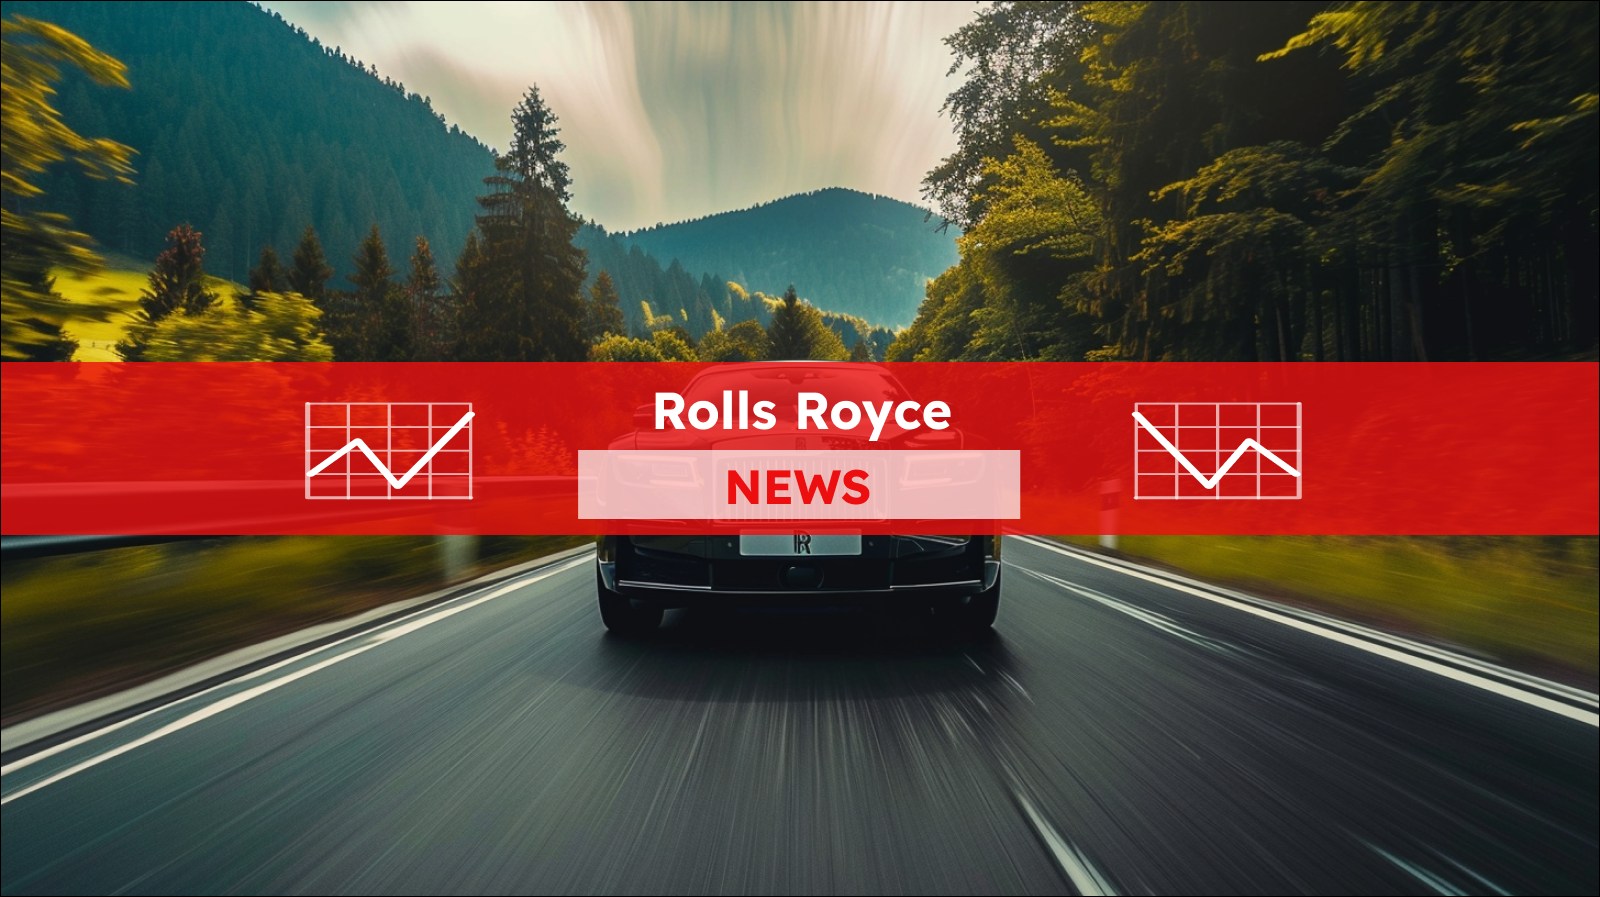 Ein luxuriöser schwarzer Rolls-Royce fährt auf einer Straße, umgeben von einem dichten Wald, mit einem Rolls Royce NEWS Banner